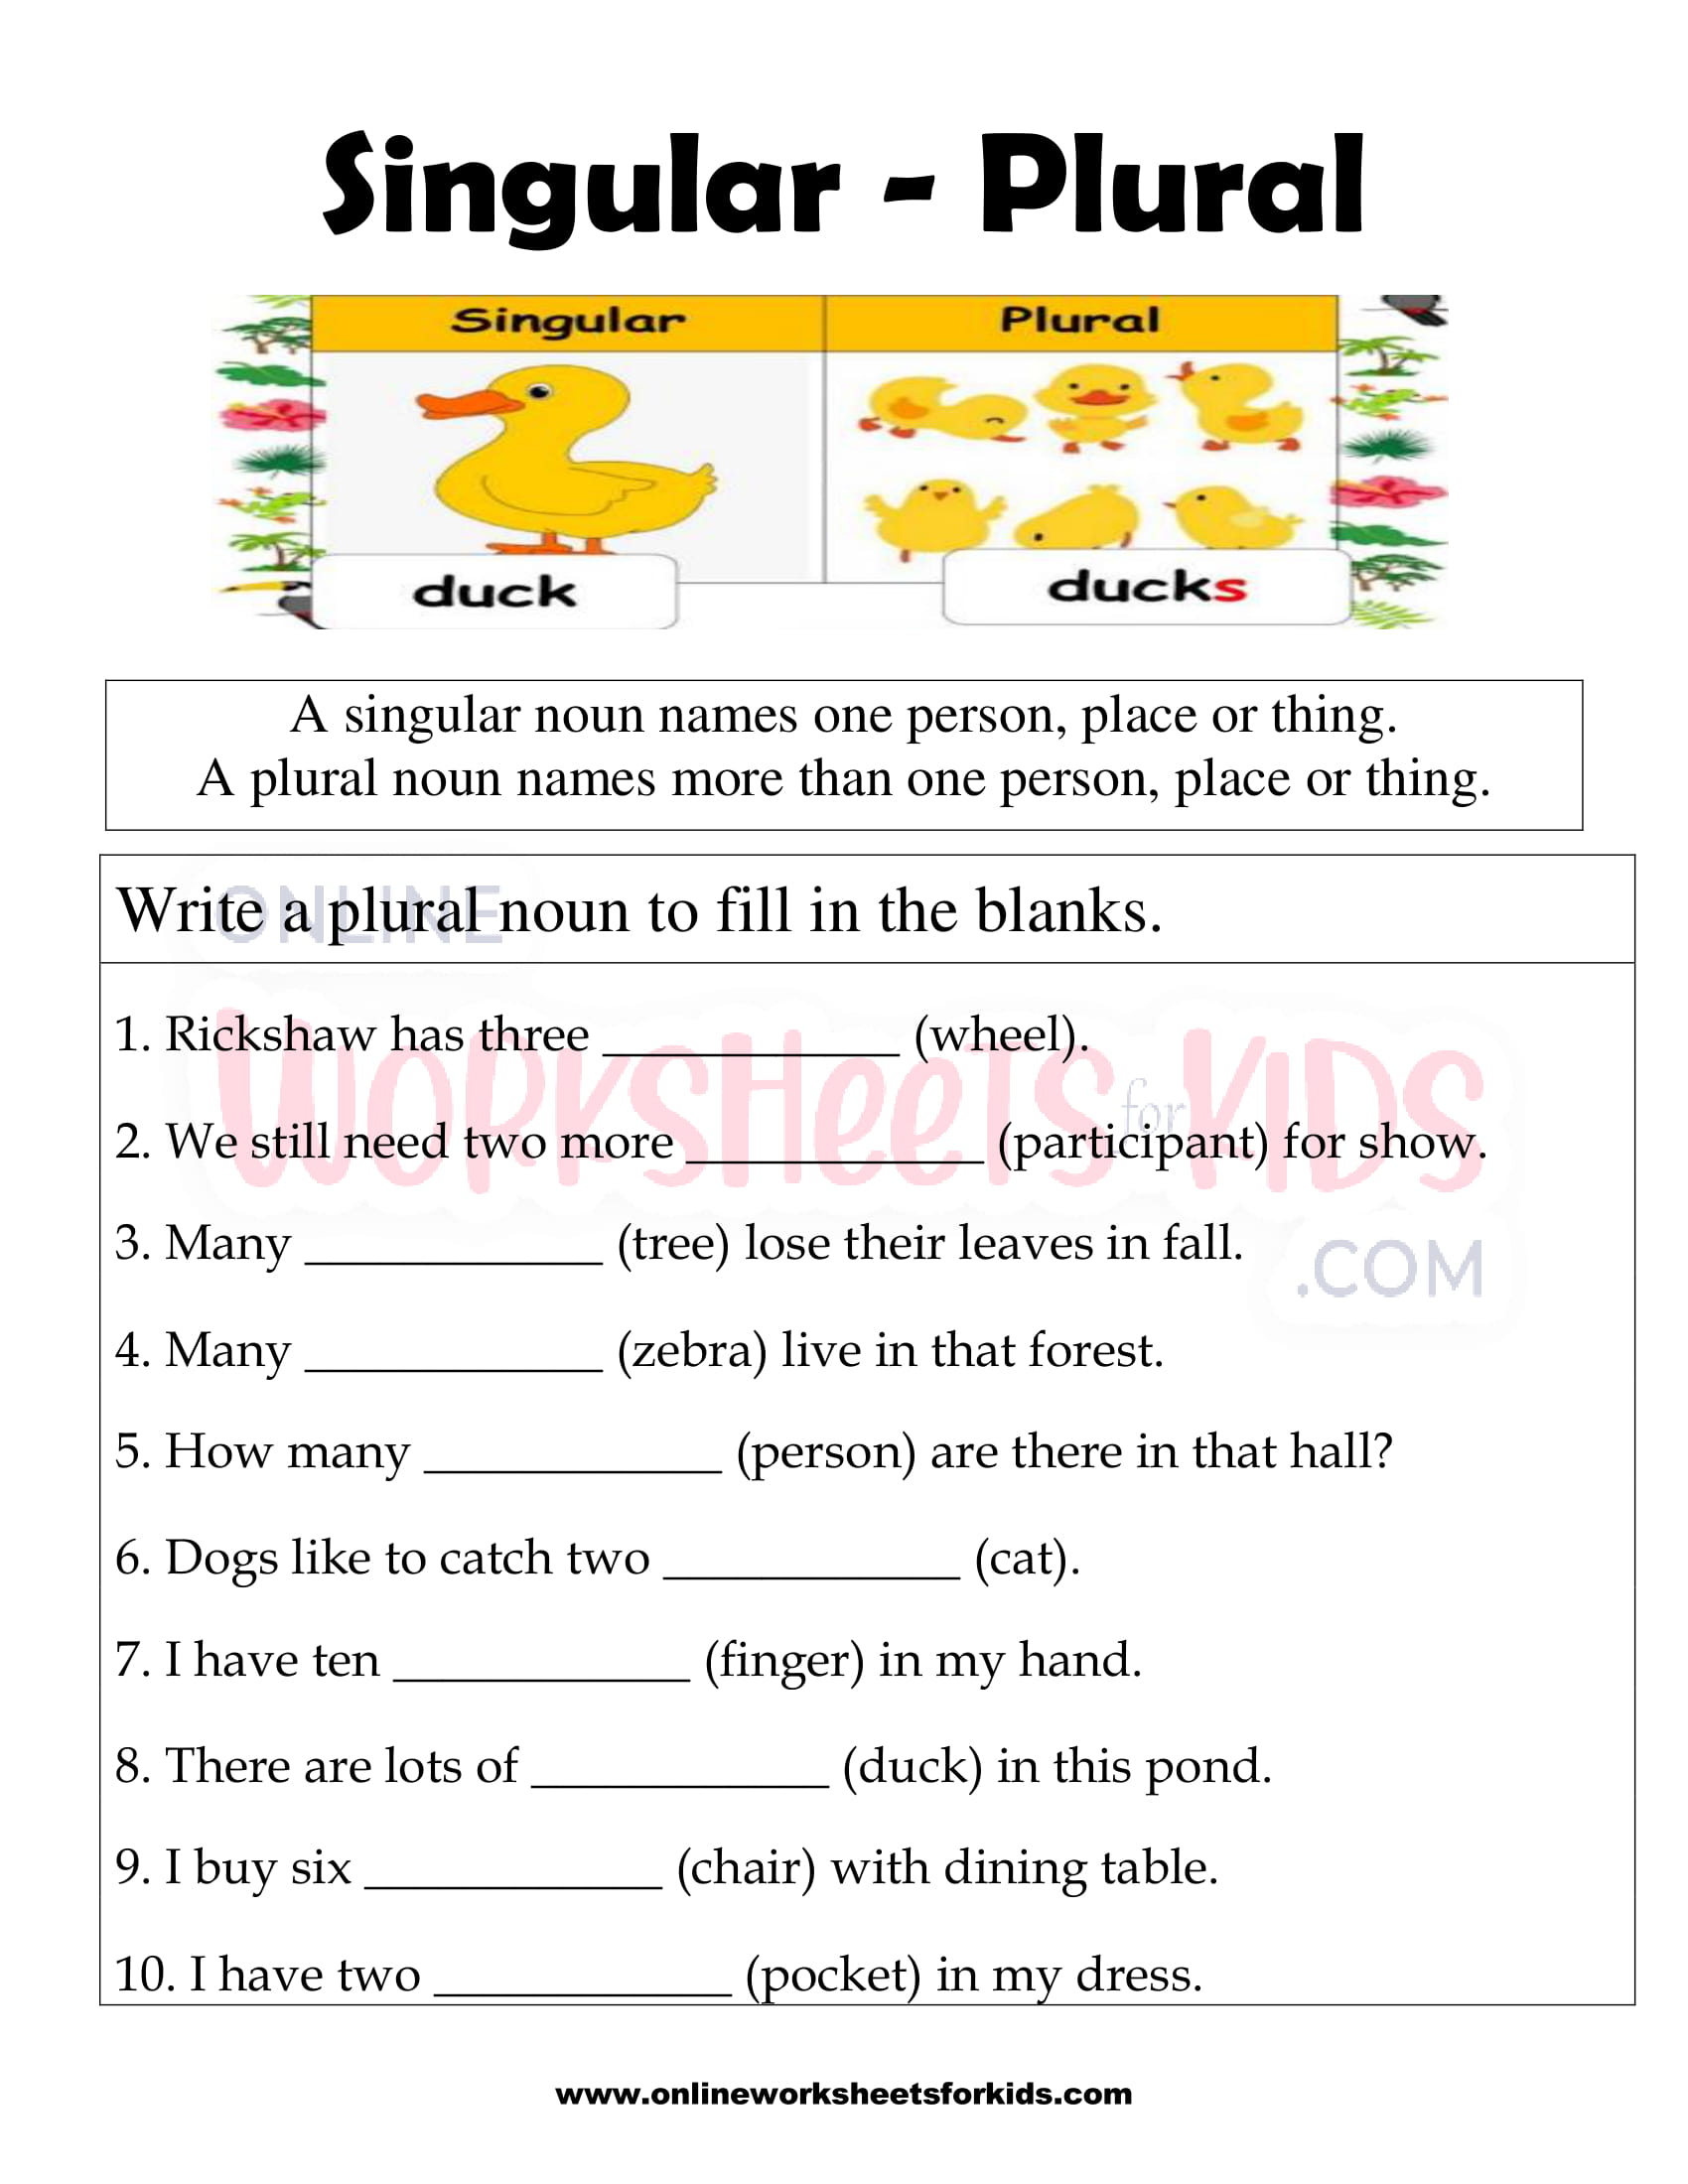 Singular Plural Worksheet For Ukg